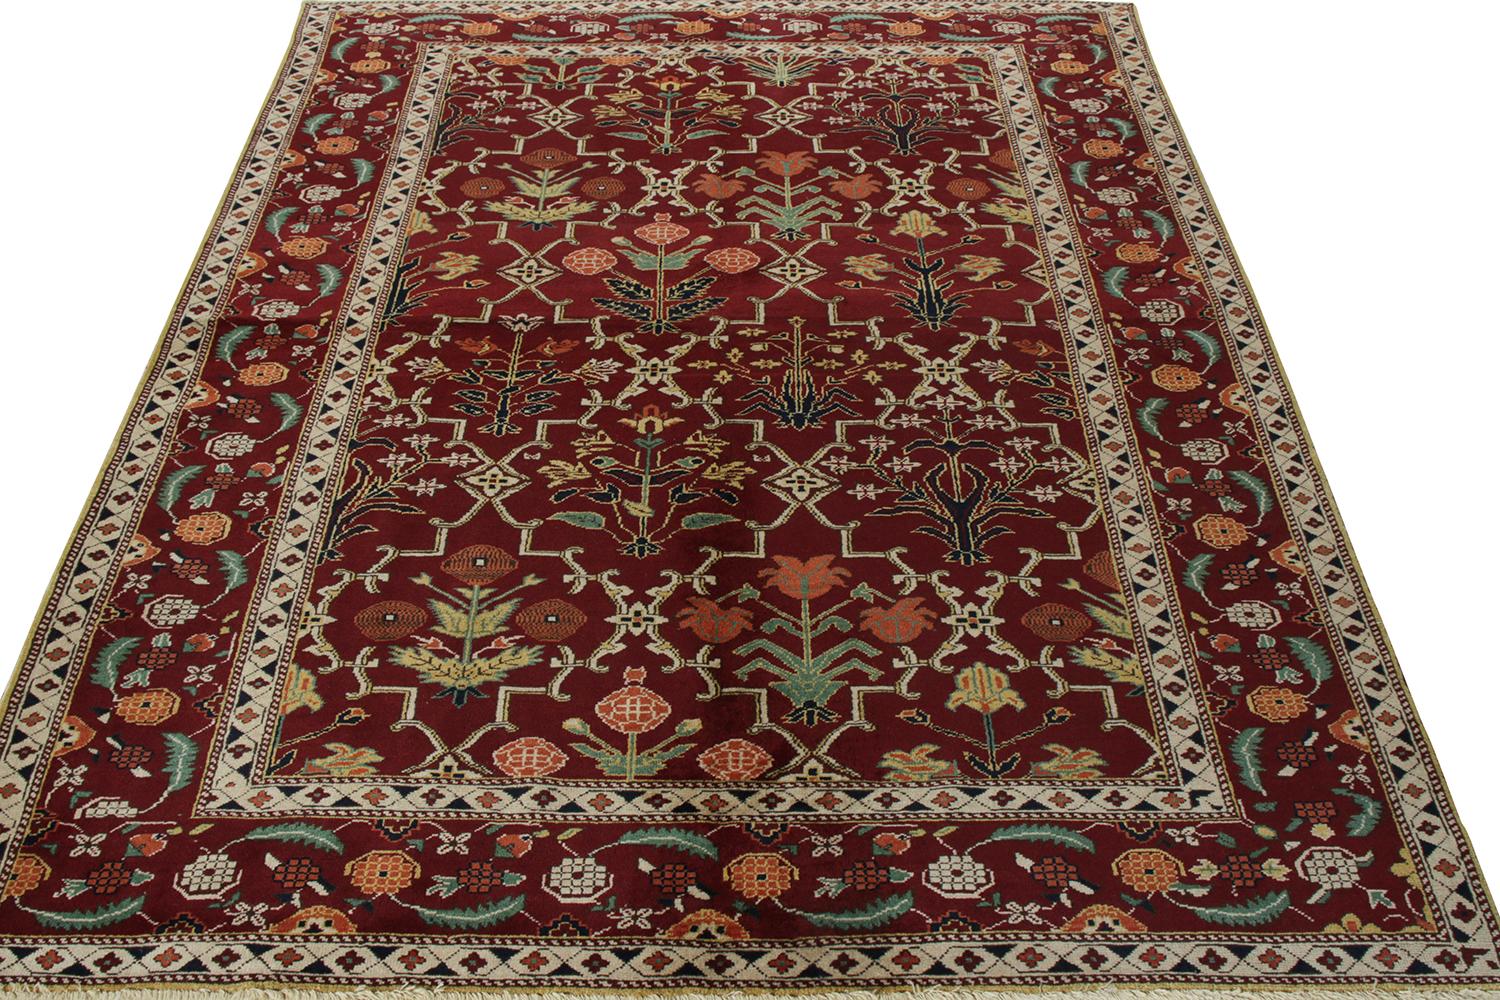 Handgeknüpft aus Wolle, ein beispielhafter 6x7-Teppich aus der Modern Classics-Kollektion von Rug & Kilim. Dieses aus Ägypten stammende Stück ist von den Agra-Teppichen des 17. Jahrhunderts inspiriert. Der Teppich vereint traditionelle und moderne